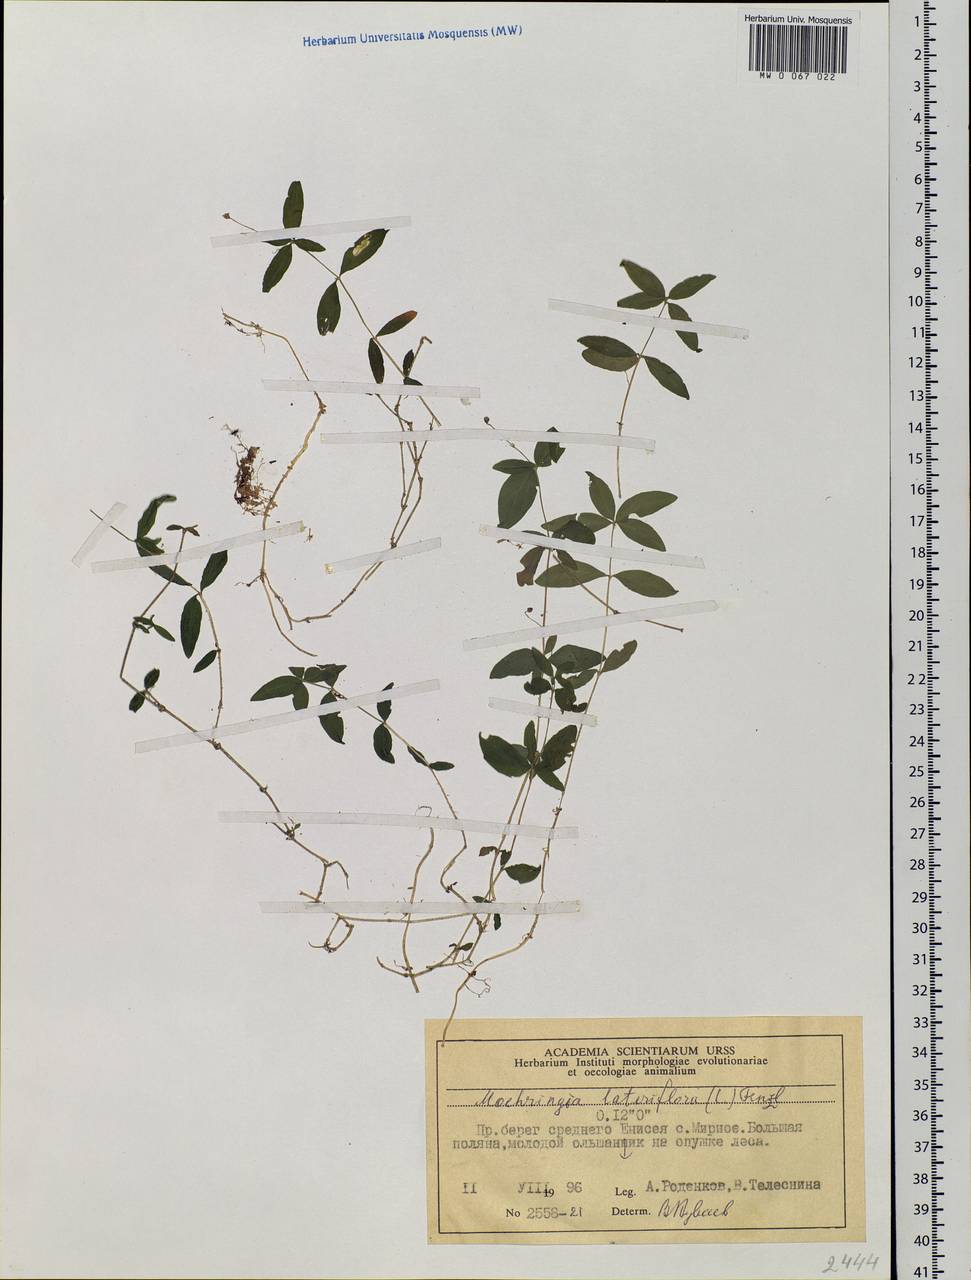 Moehringia lateriflora (L.) Fenzl, Siberia, Central Siberia (S3) (Russia)